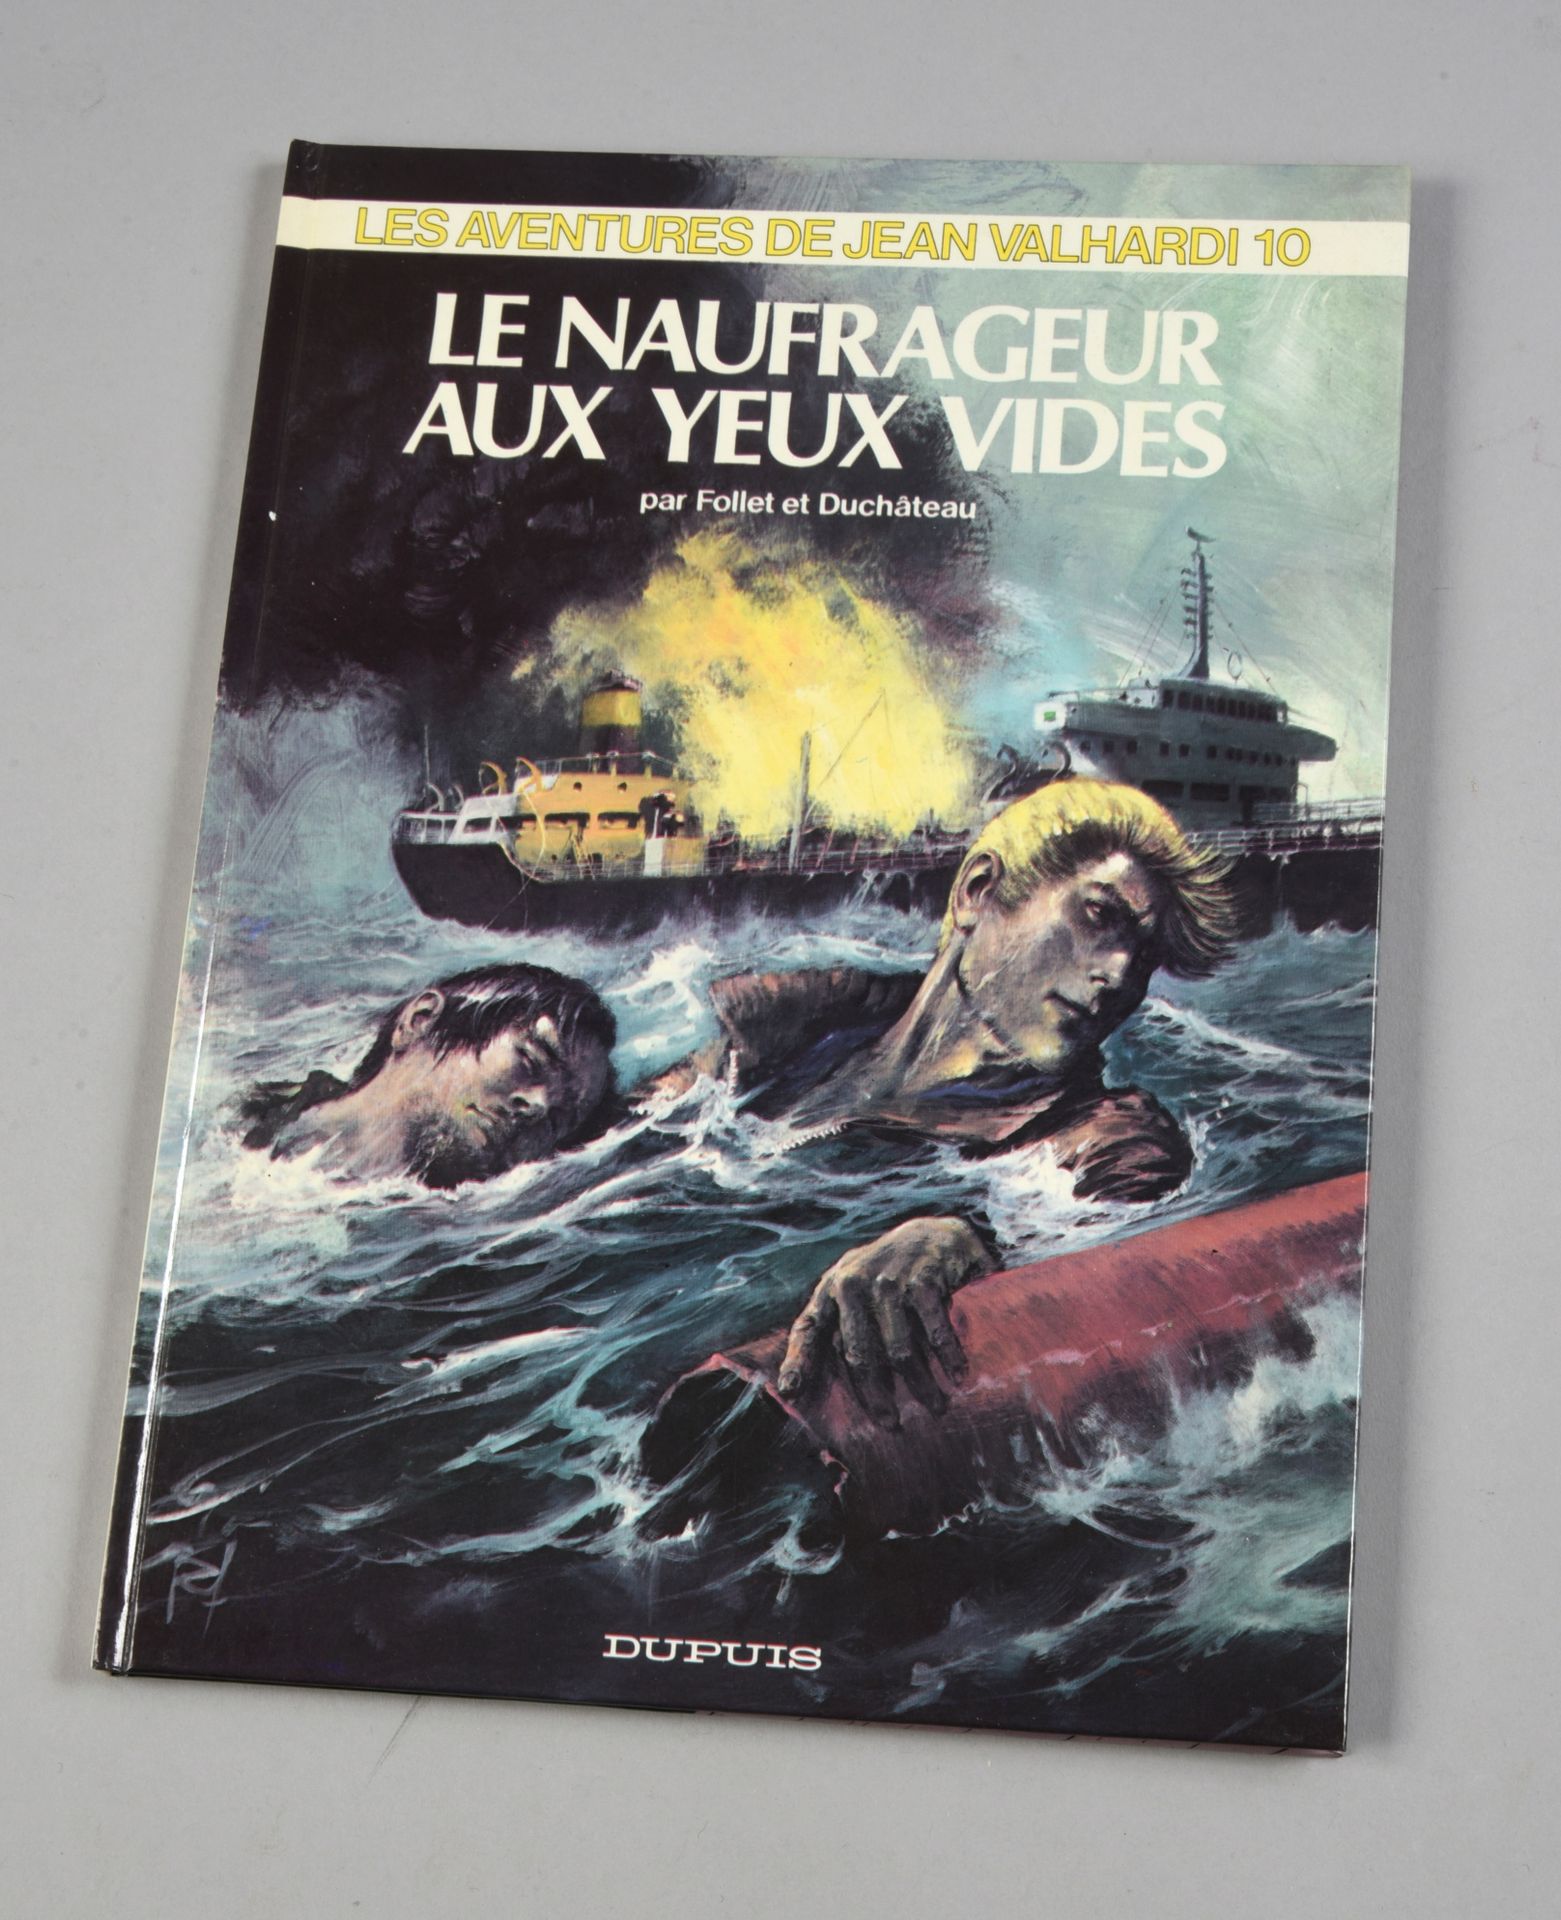 FOLLET Jean Valhardi. LES NAUFRAGEURS AUX YEUX VIDES. Primera edición Dupuis 197&hellip;